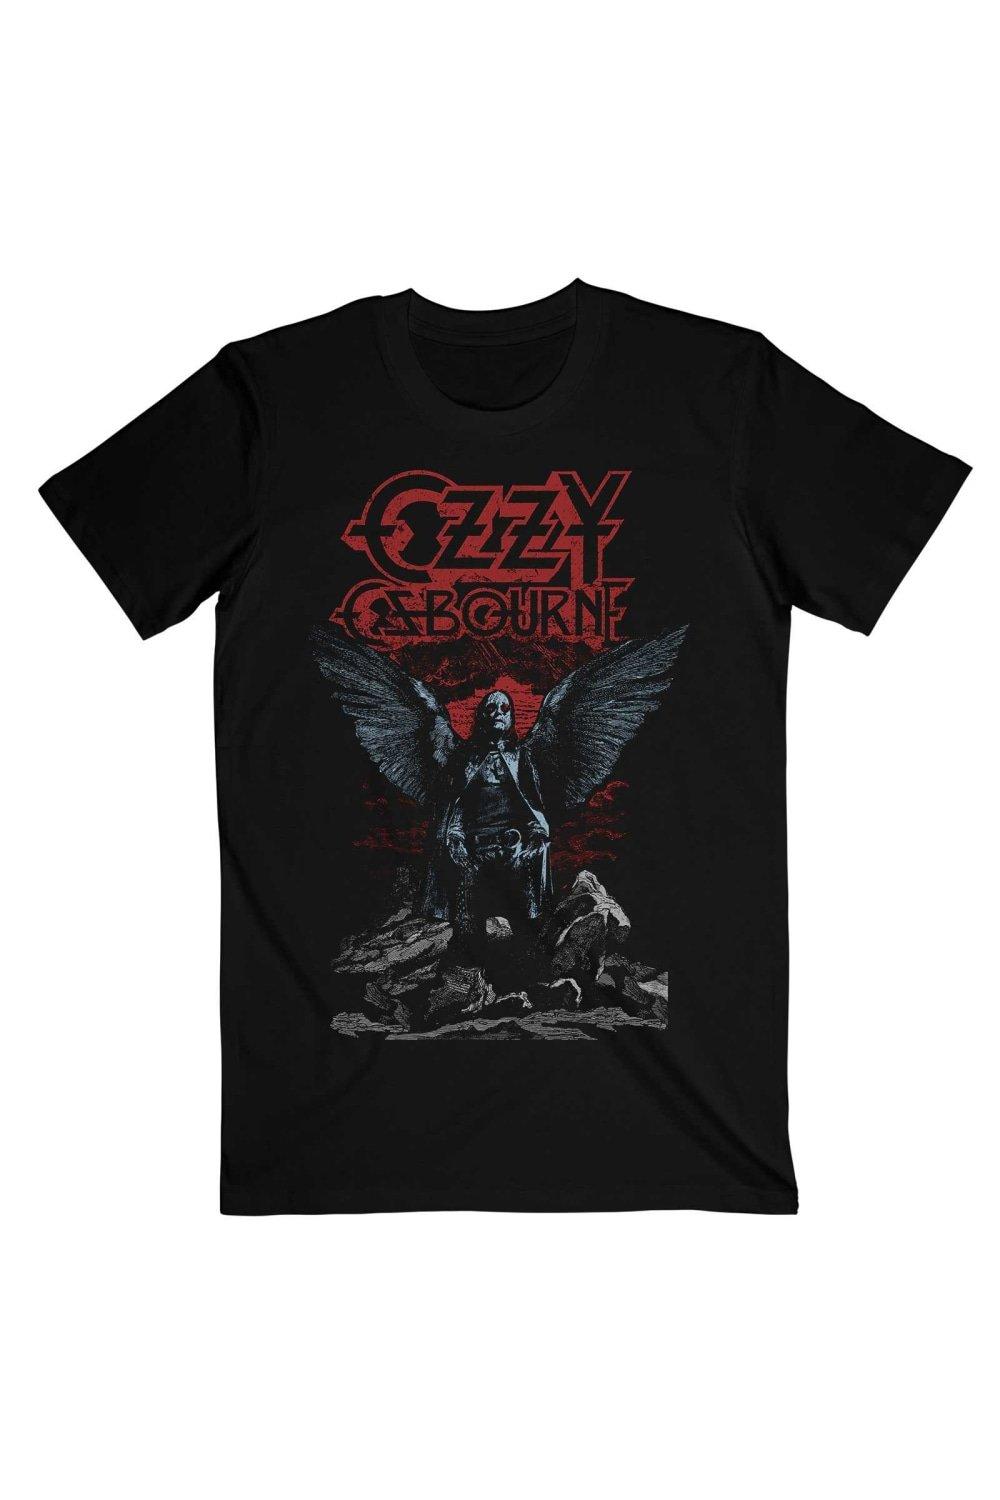 Хлопковая футболка с крыльями ангела Ozzy Osbourne, черный женская дизайнерская брошь крылья ангела с кристаллами